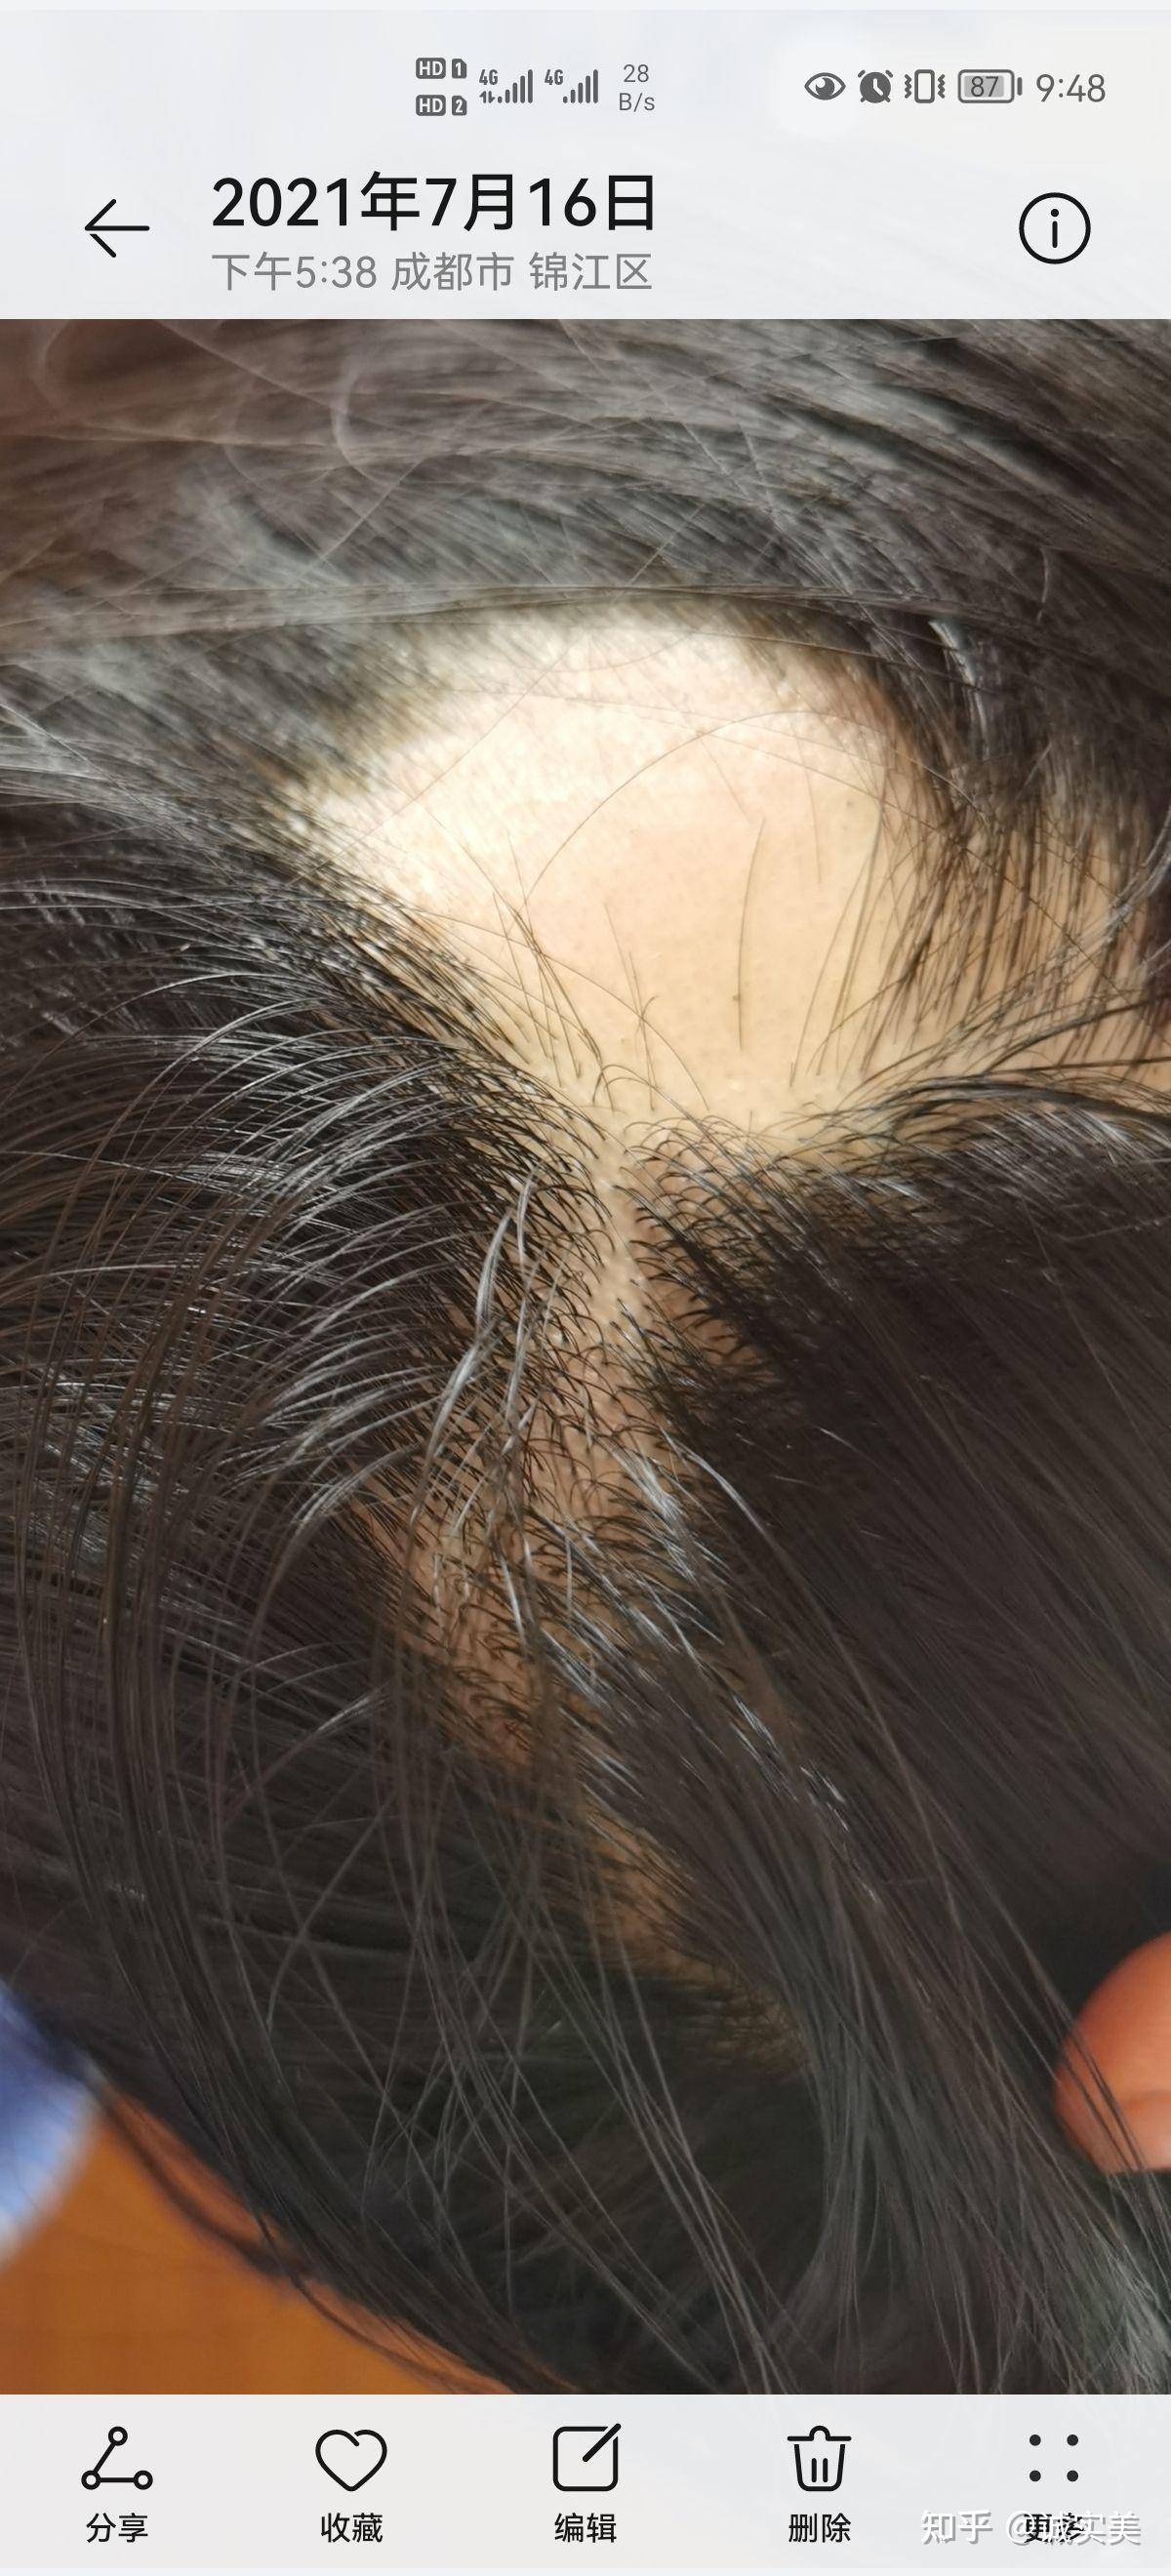 脂溢性脱发77斑秃,使用米诺地尔酊六个月变化!